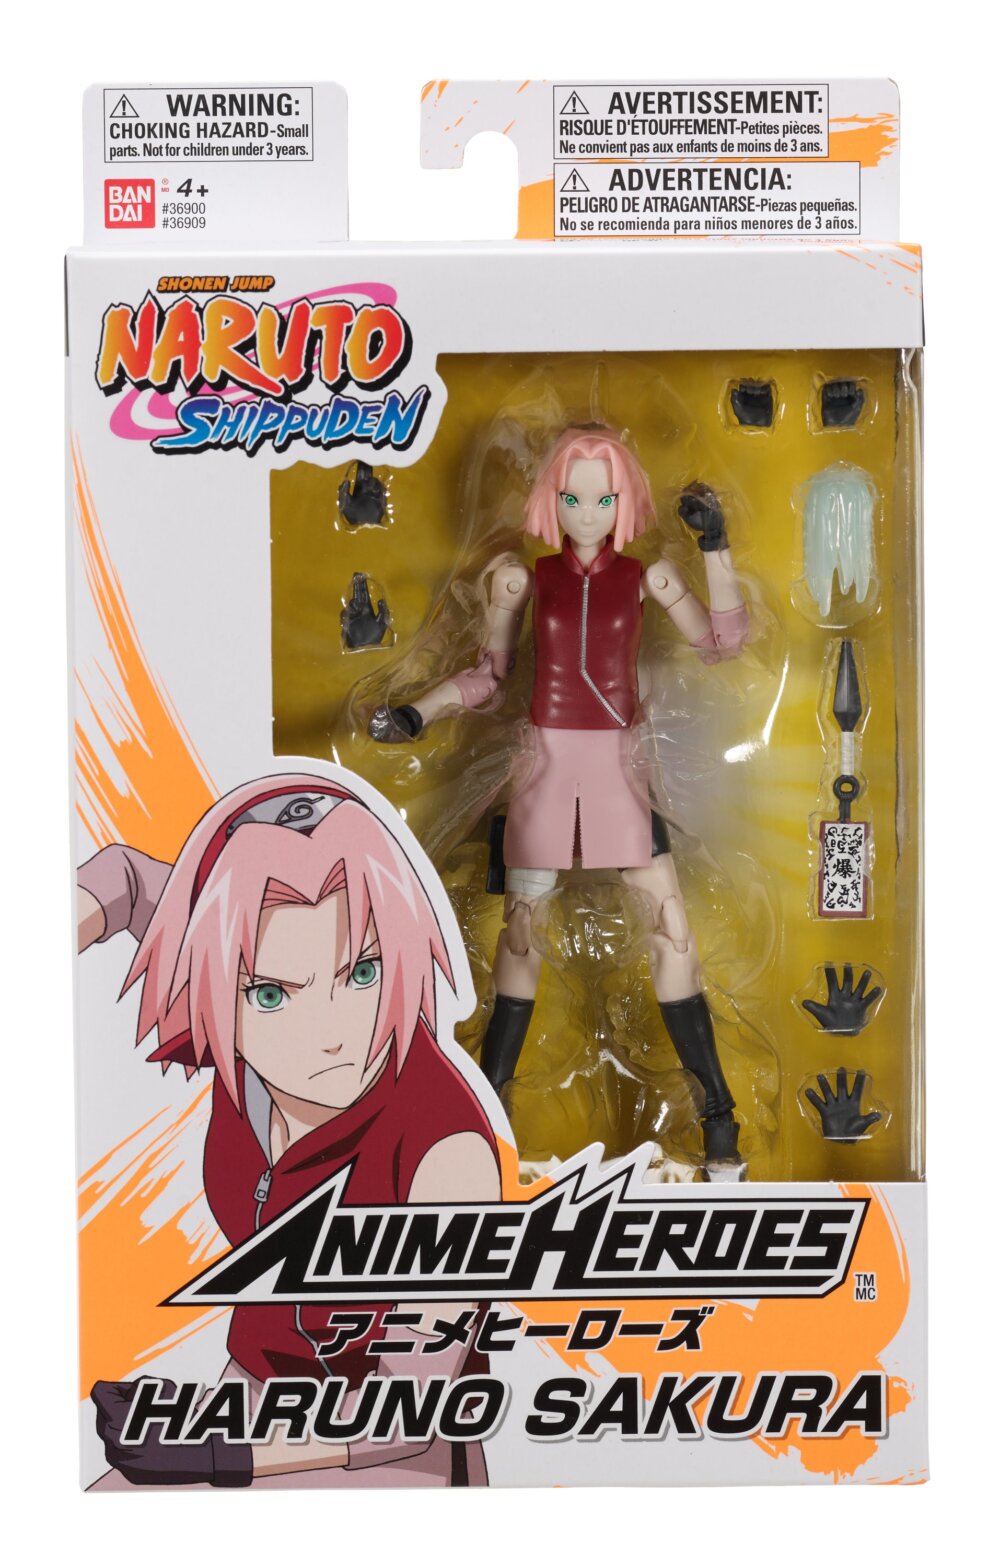 36909 Bandai Anime Heroes Naruto Haruno Sakura 0006 (2)